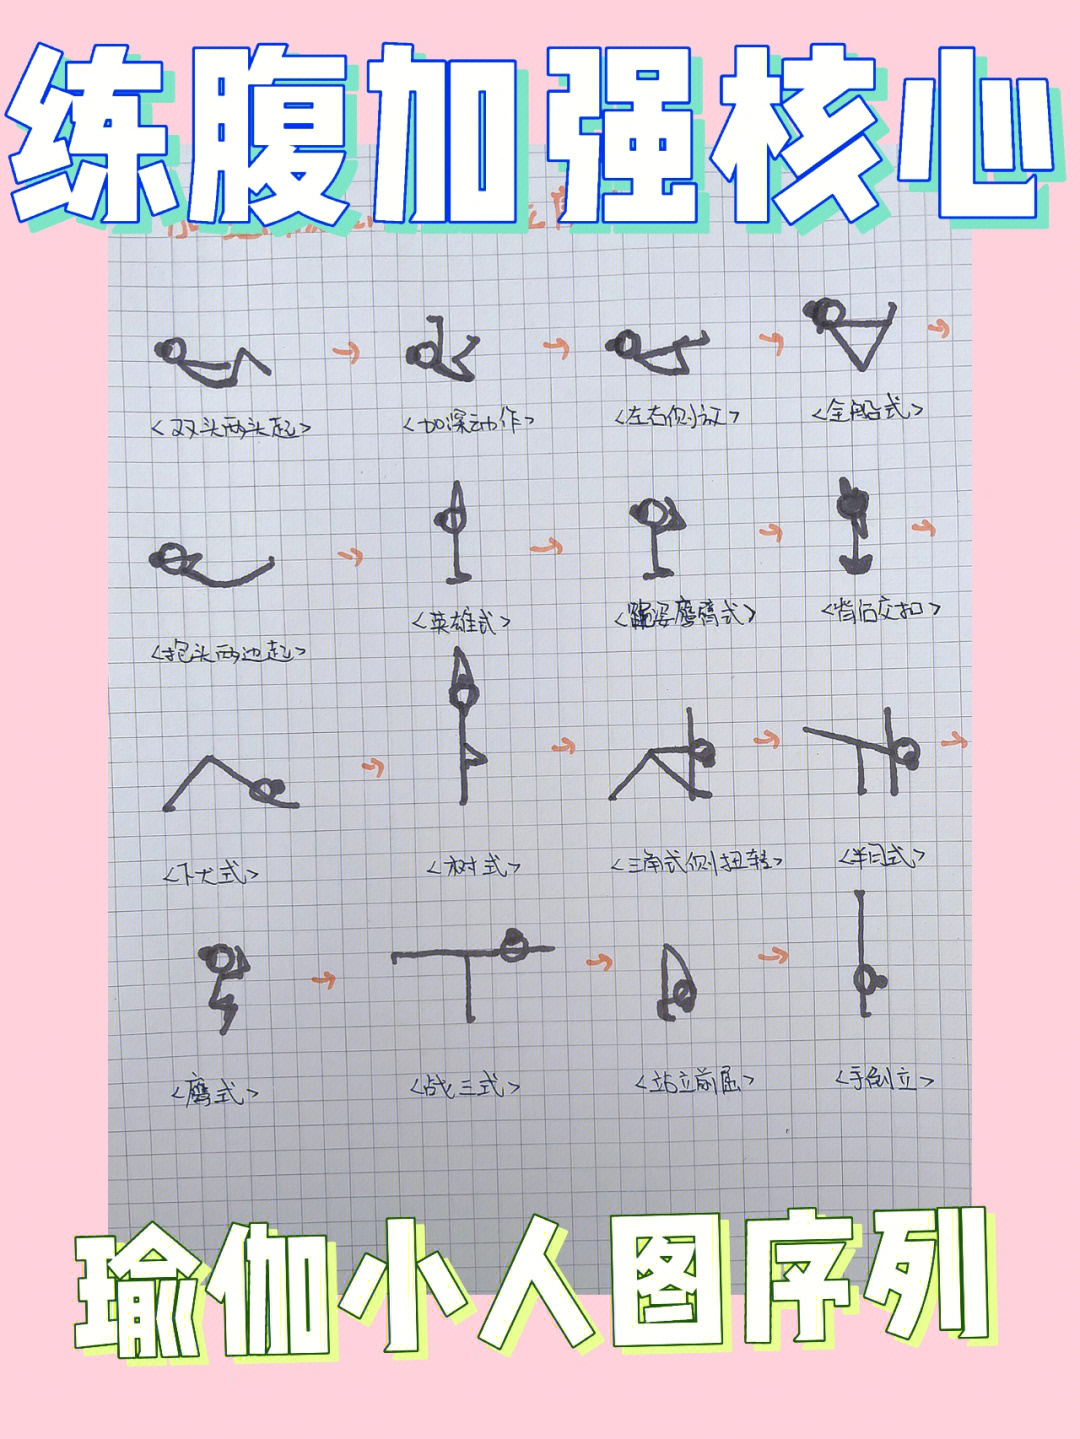 瑜伽小人图笔记五组体式练习序列